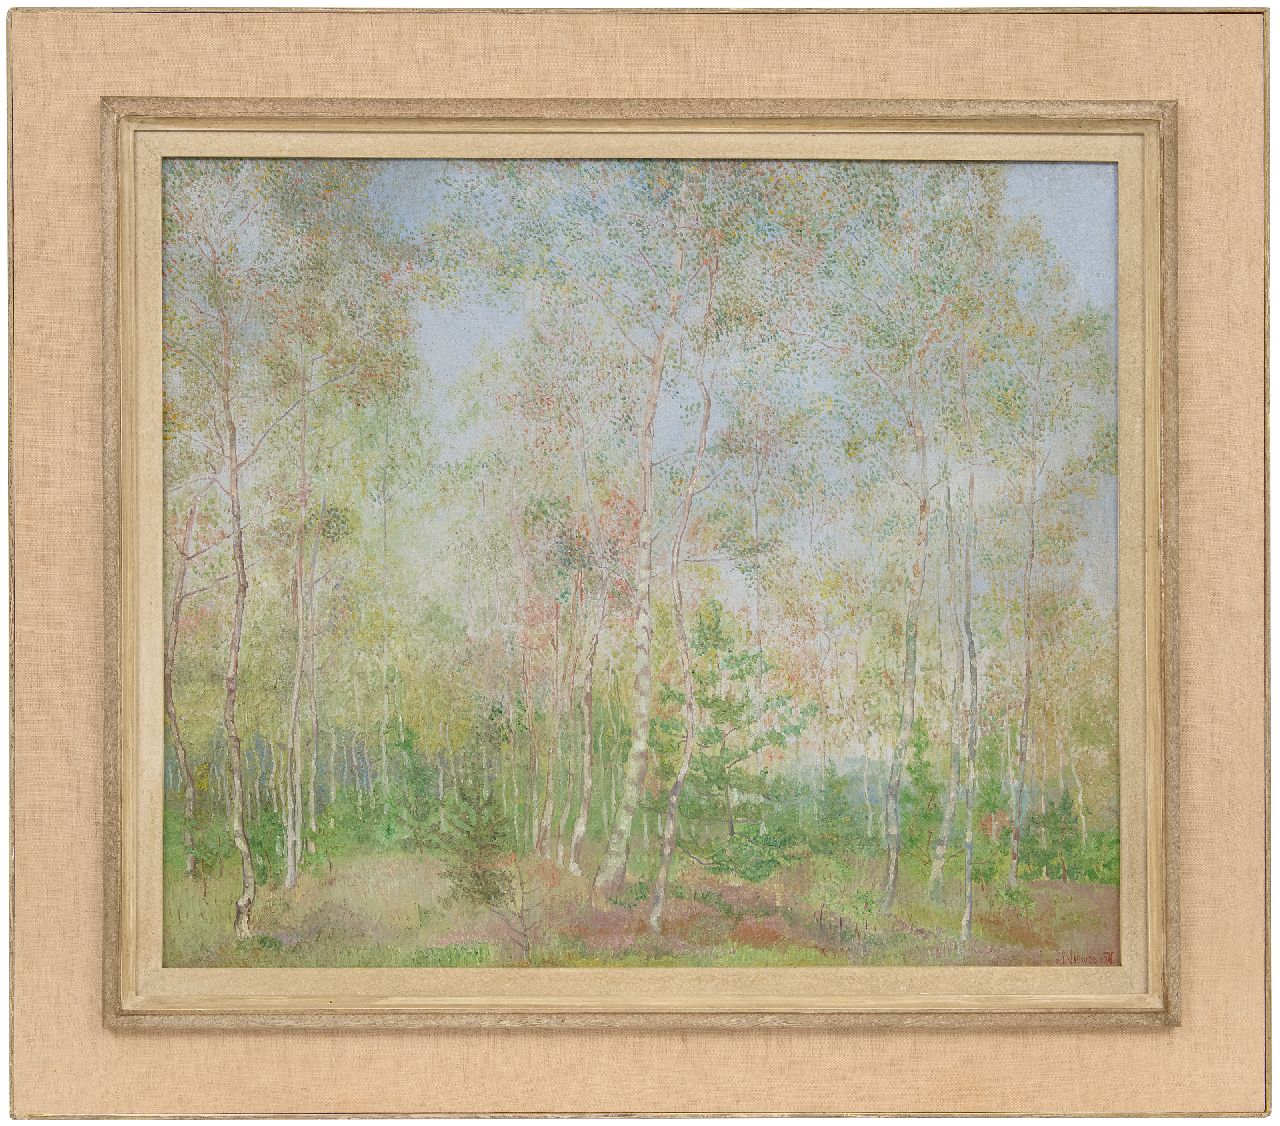 Nieweg J.  | Jakob Nieweg | Schilderijen te koop aangeboden | Berkenbomen, olieverf op doek 60,3 x 70,7 cm, gesigneerd rechtsonder en gedateerd 1920